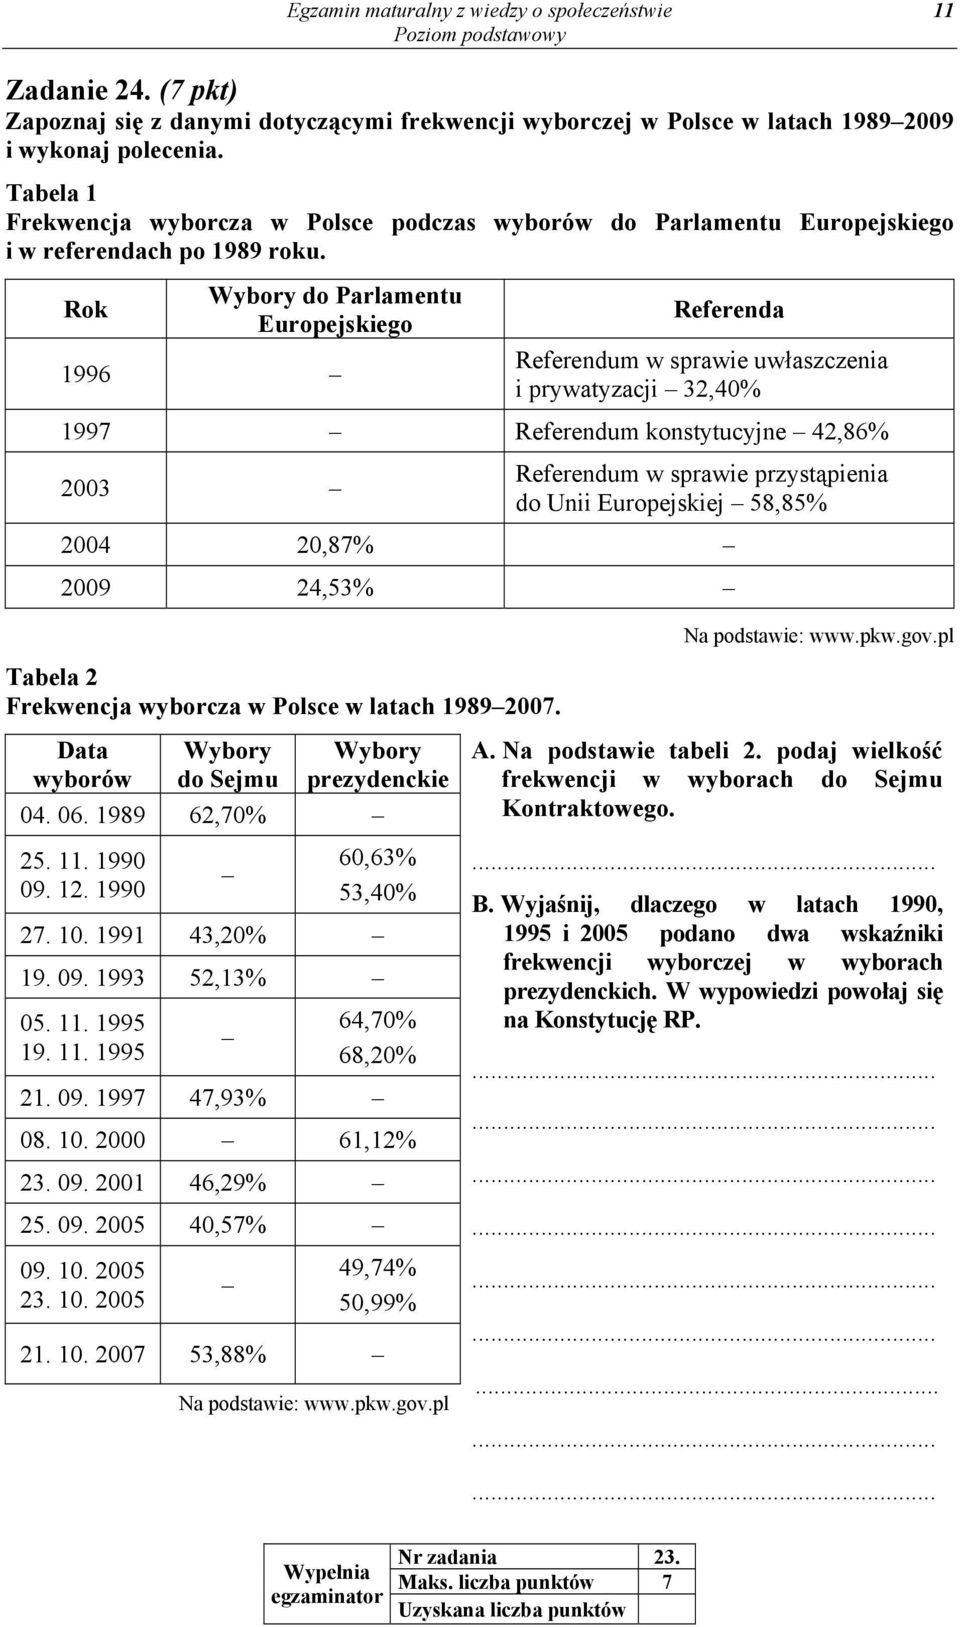 Rok Wybory do Parlamentu Europejskiego 1996 Referenda Referendum w sprawie uwłaszczenia i prywatyzacji 32,40% 1997 Referendum konstytucyjne 42,86% 2003 Referendum w sprawie przystąpienia do Unii